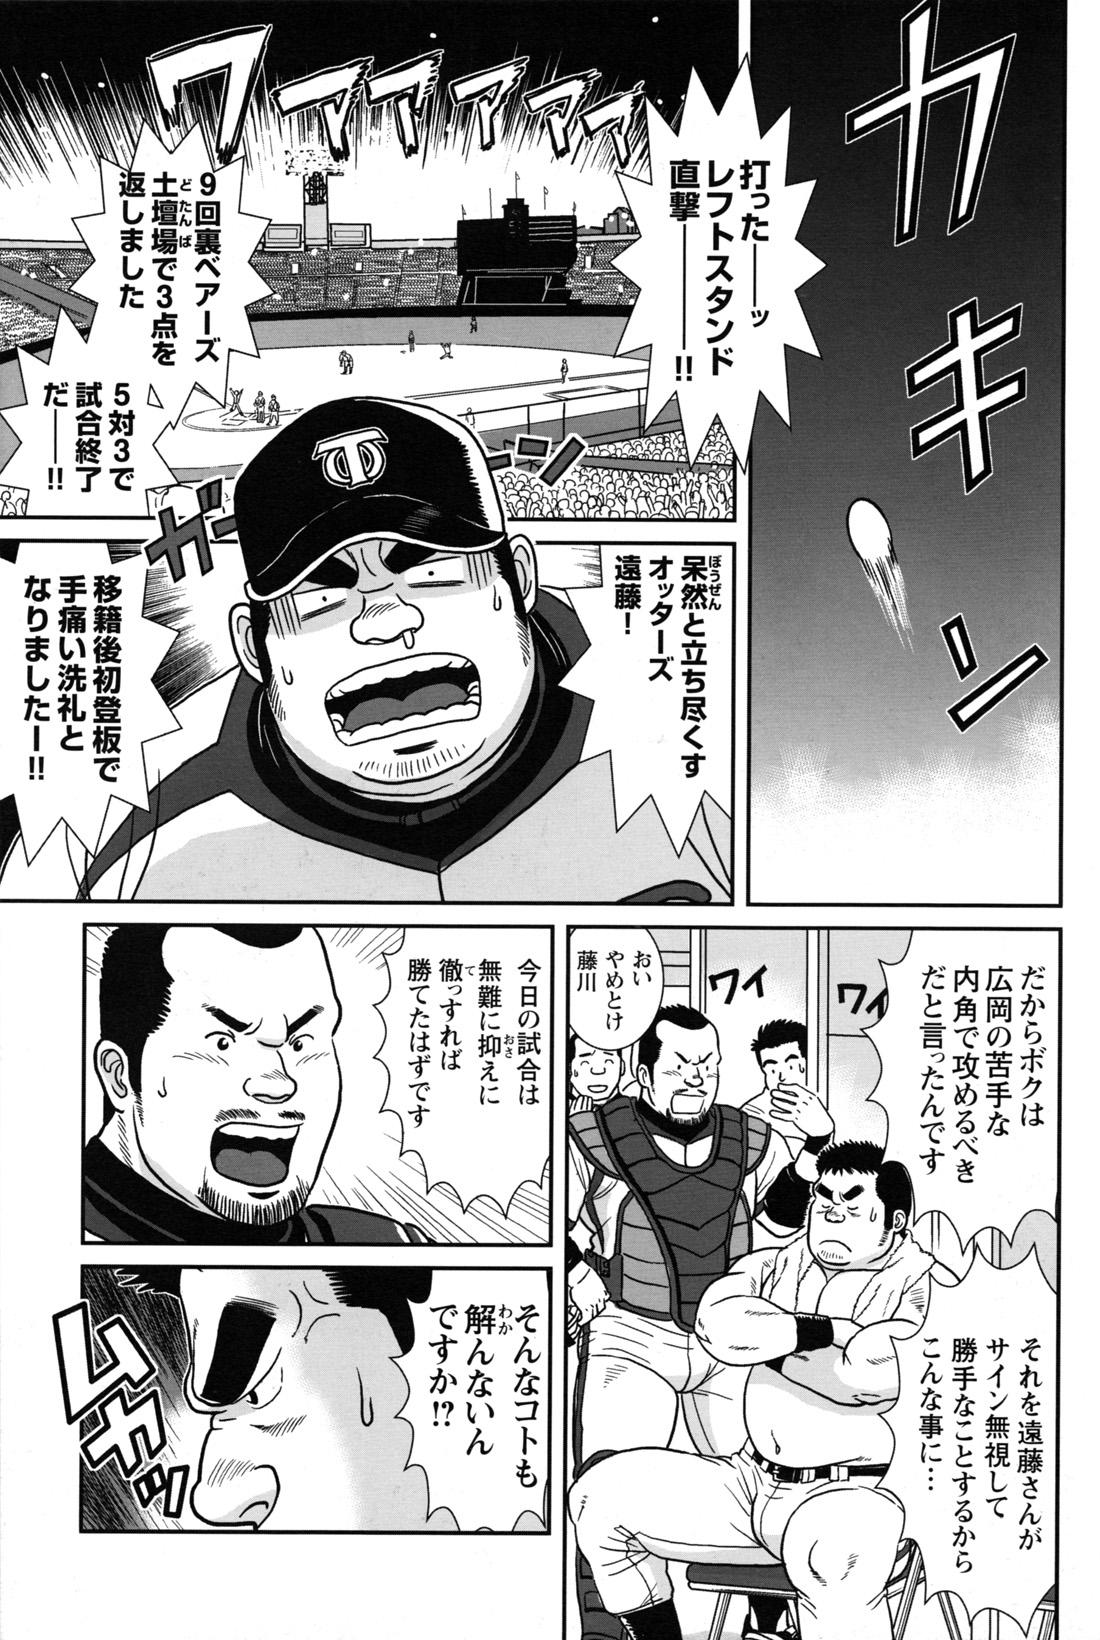 Comic G-men Gaho No.12 Aibou 182